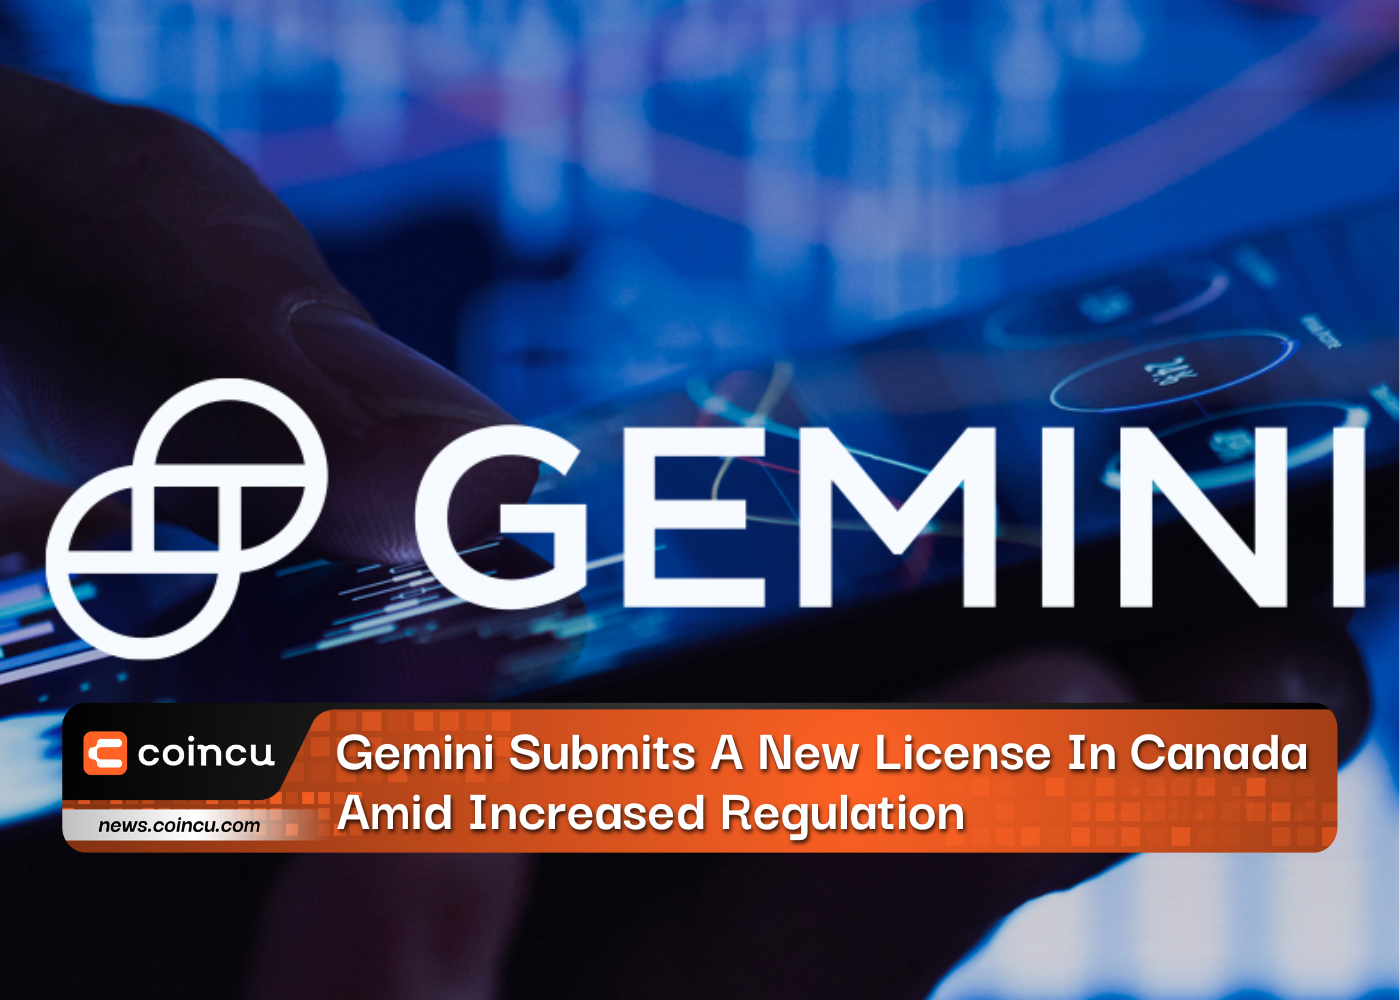 Gemini reicht angesichts der zunehmenden Regulierung eine neue Lizenz in Kanada ein